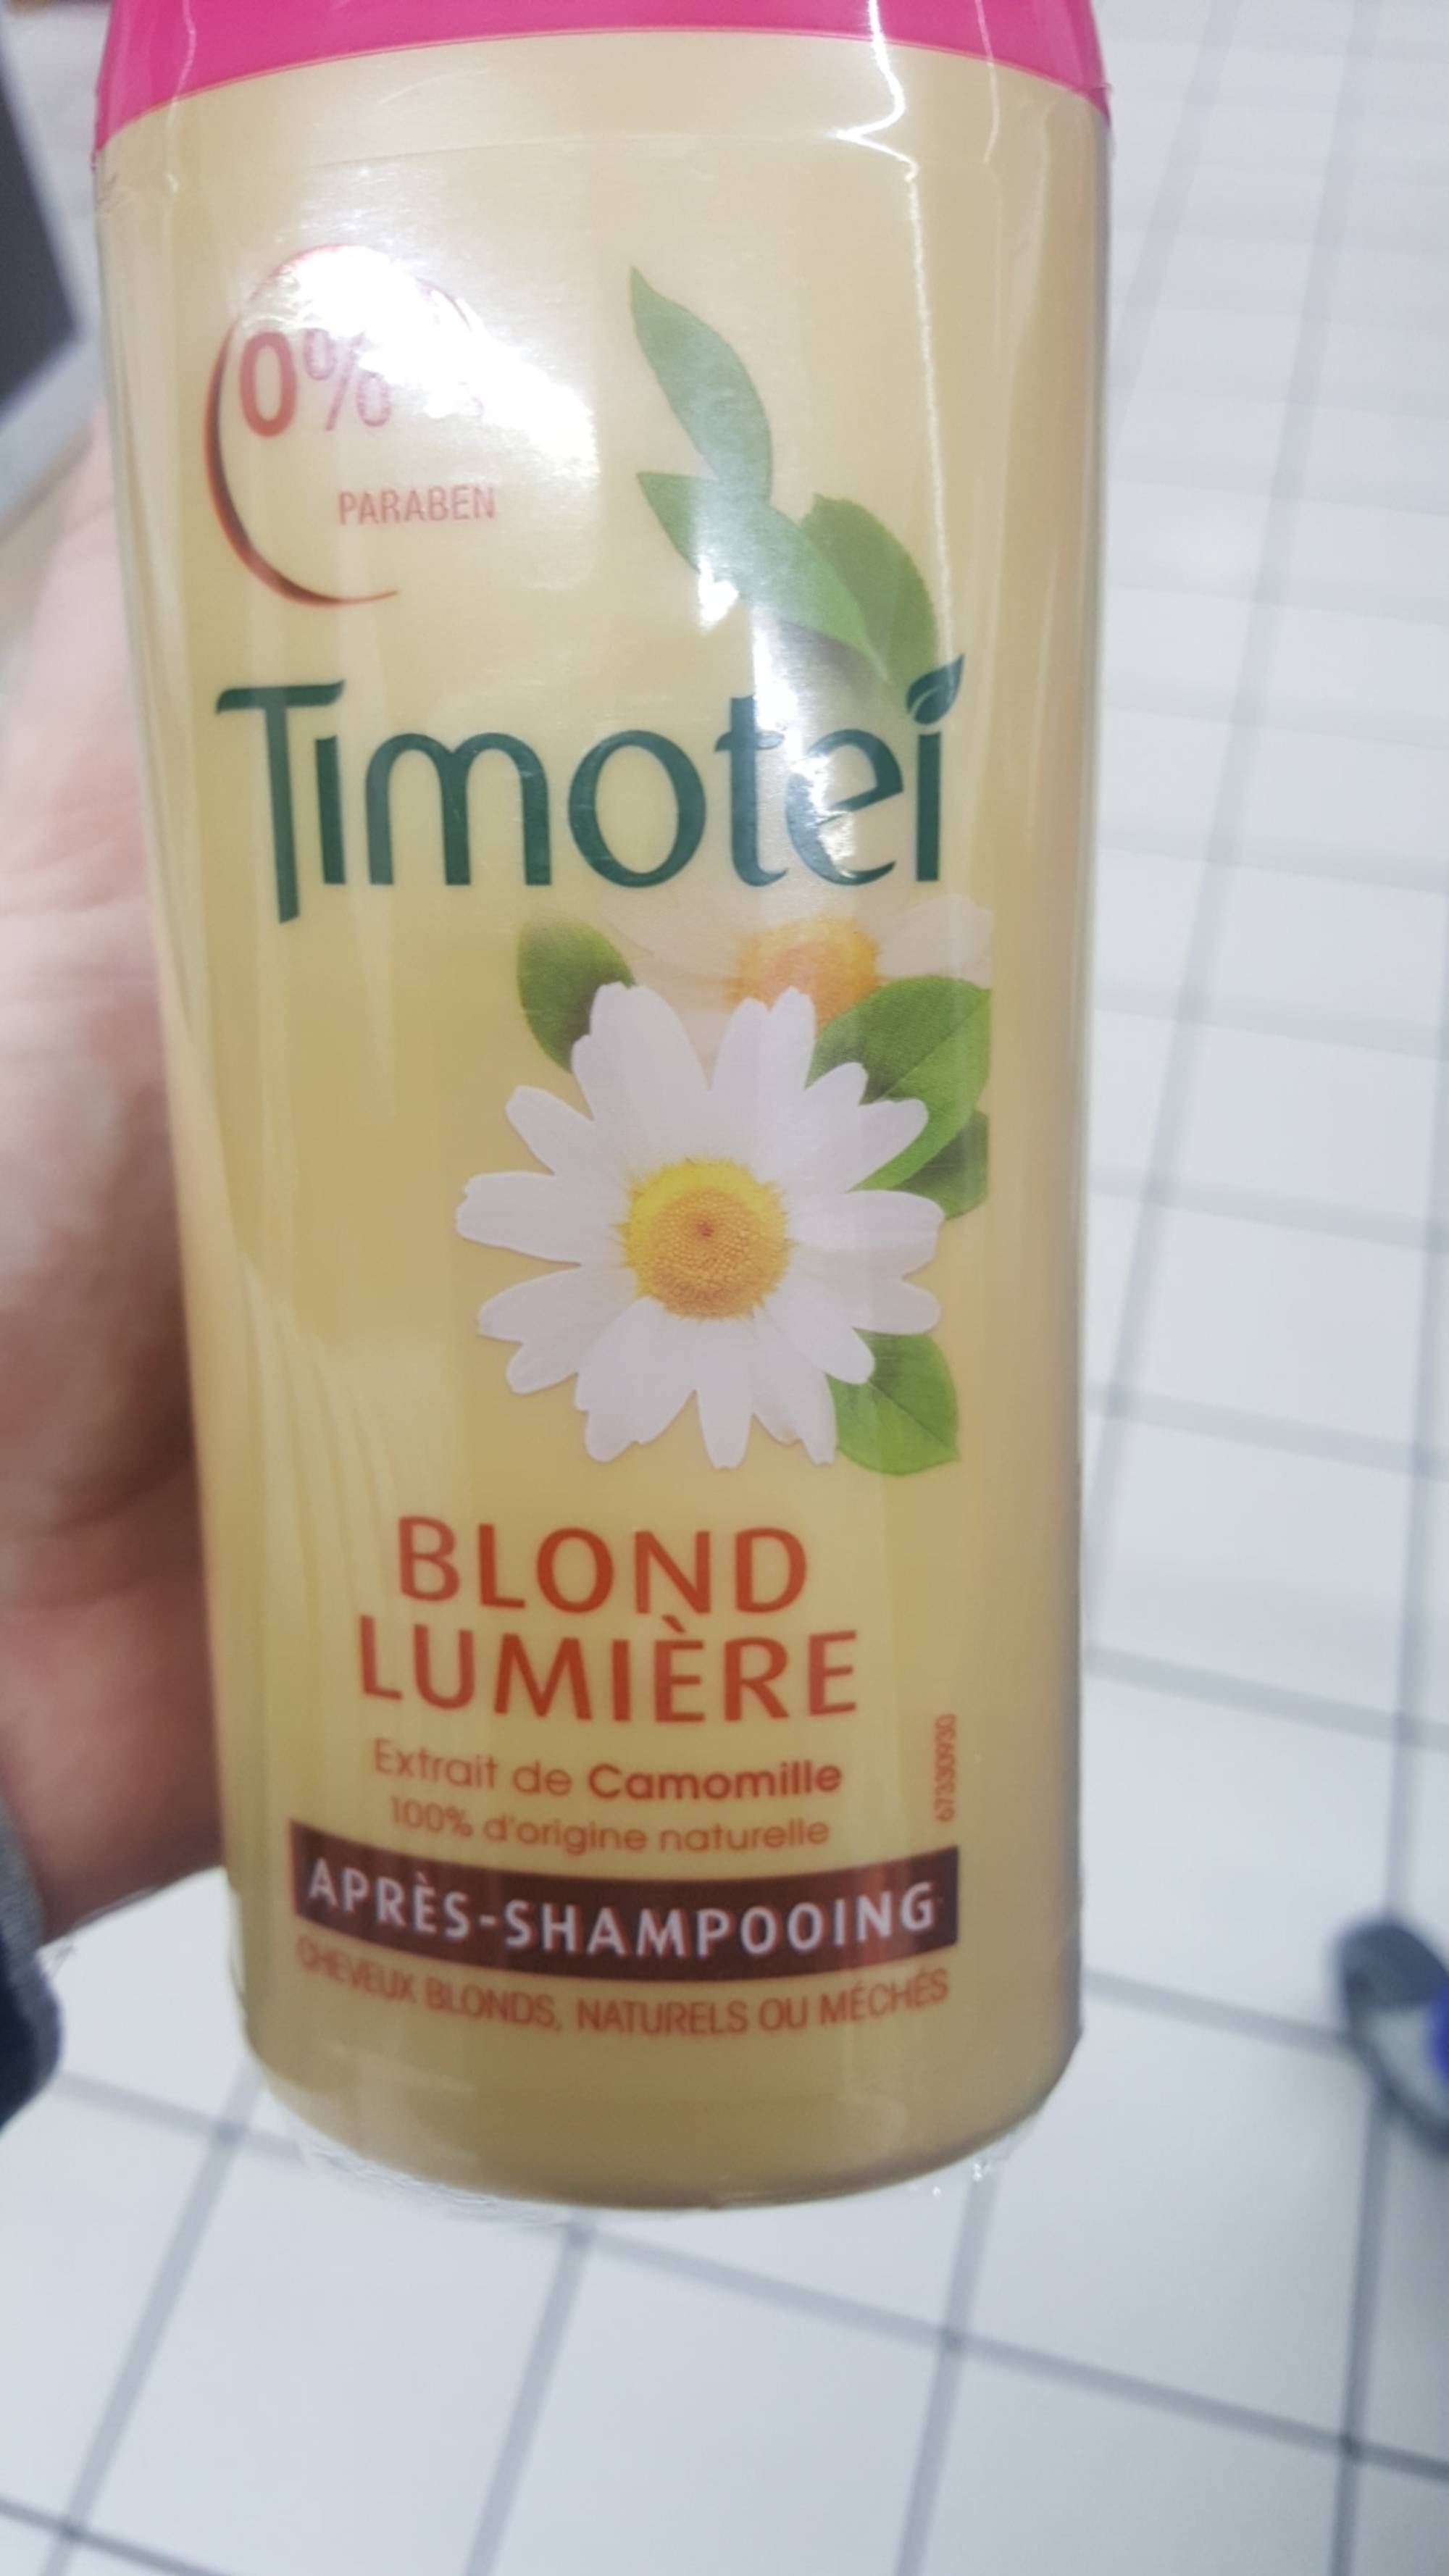 TIMOTEI - Blond lumière  - Après-shampooing extrait de camomille